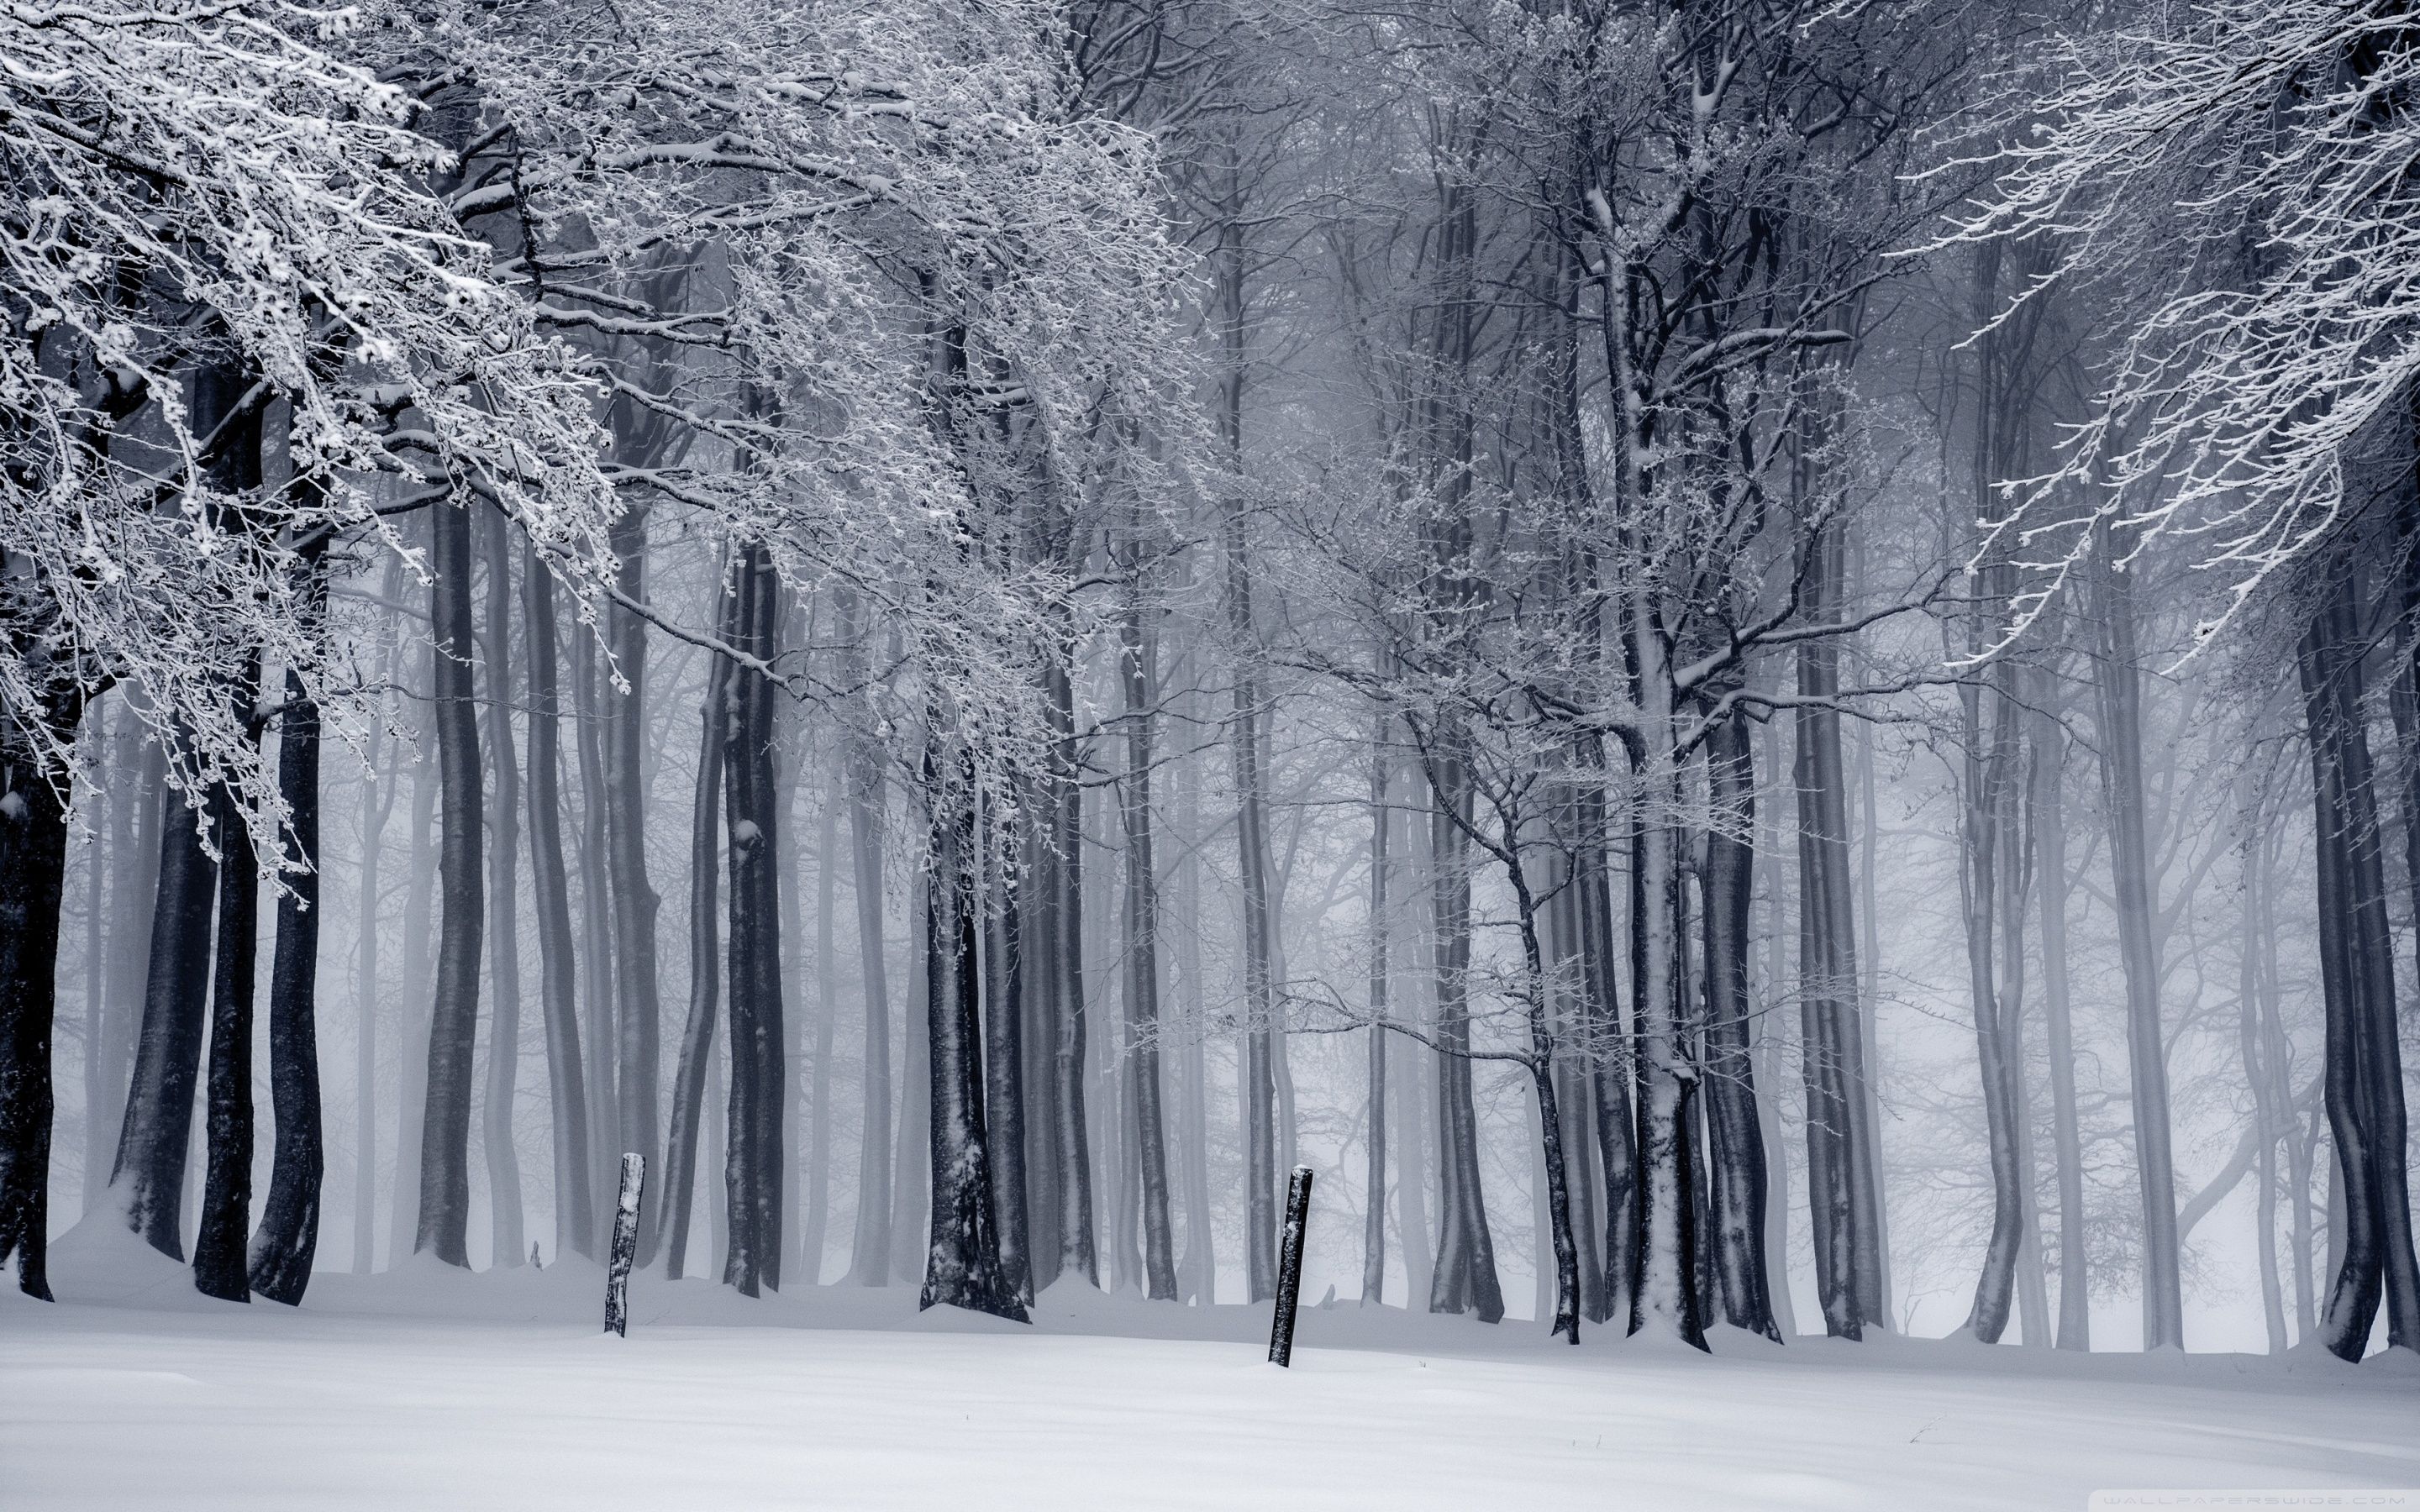 Fondos de bosque de invierno - Los mejores fondos de bosque de invierno gratis